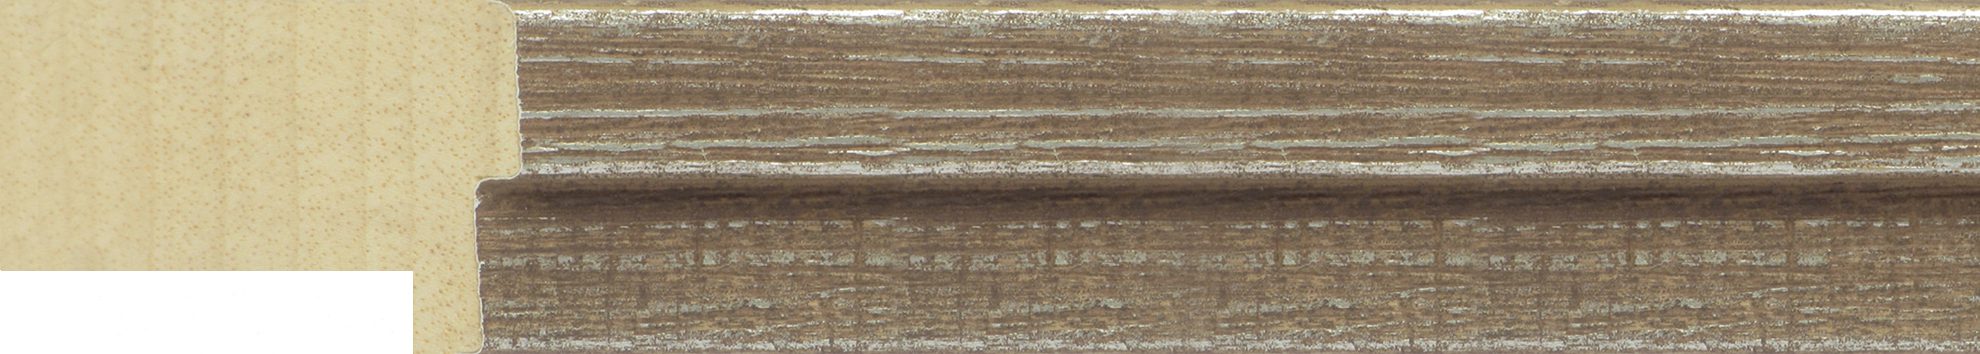 moulding-30x44mm-deep-rebate-rustic-walnut-yorks-framing